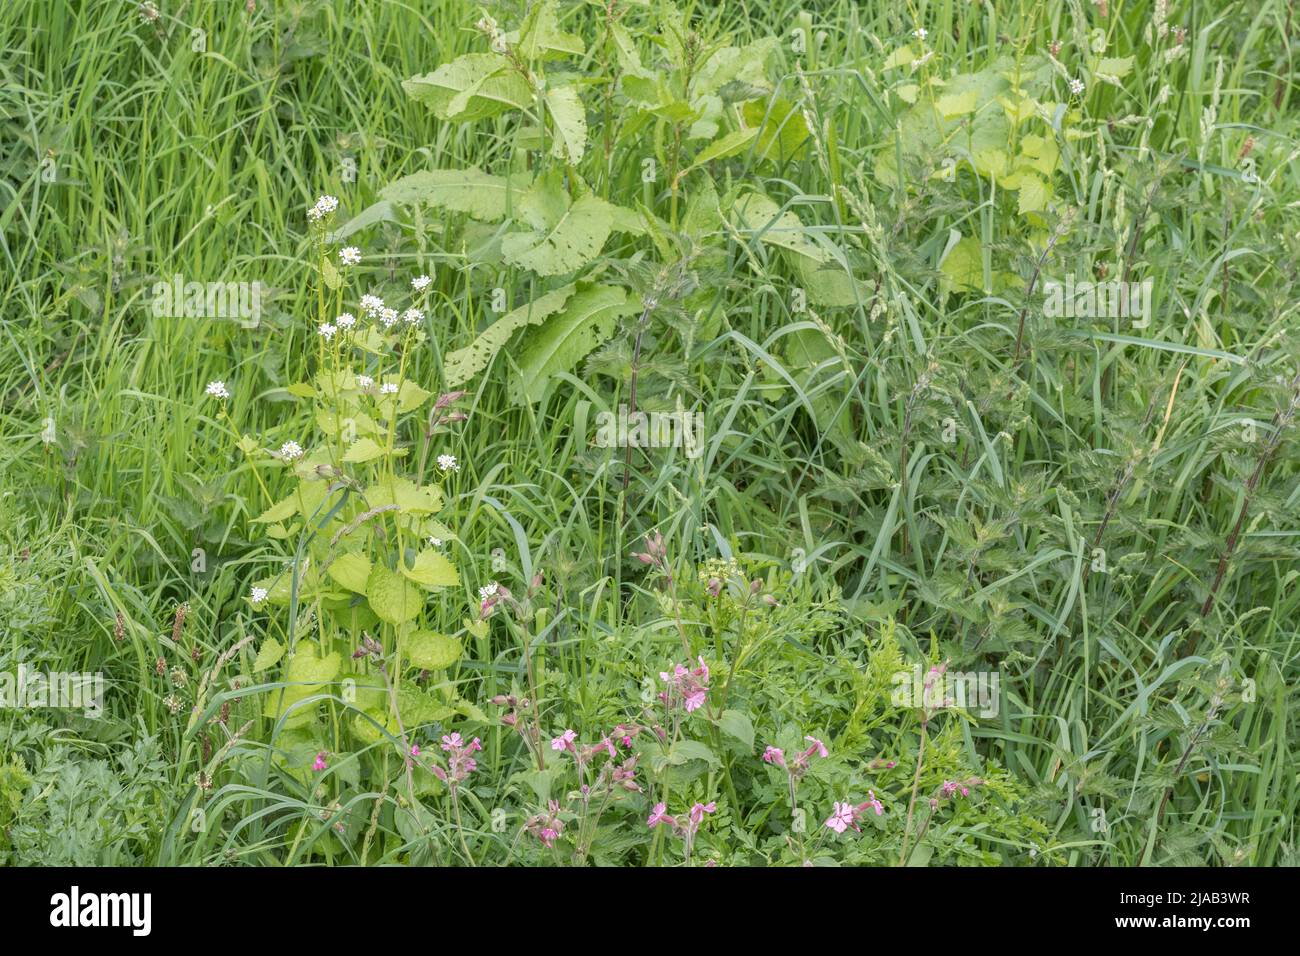 Foglie / fogliame e fiori bianchi di Hedge aglio / Jack-by-the-hedge / Alliaria petiolata in erba verge. H/G è una pianta selvatica commestibile comune. Foto Stock